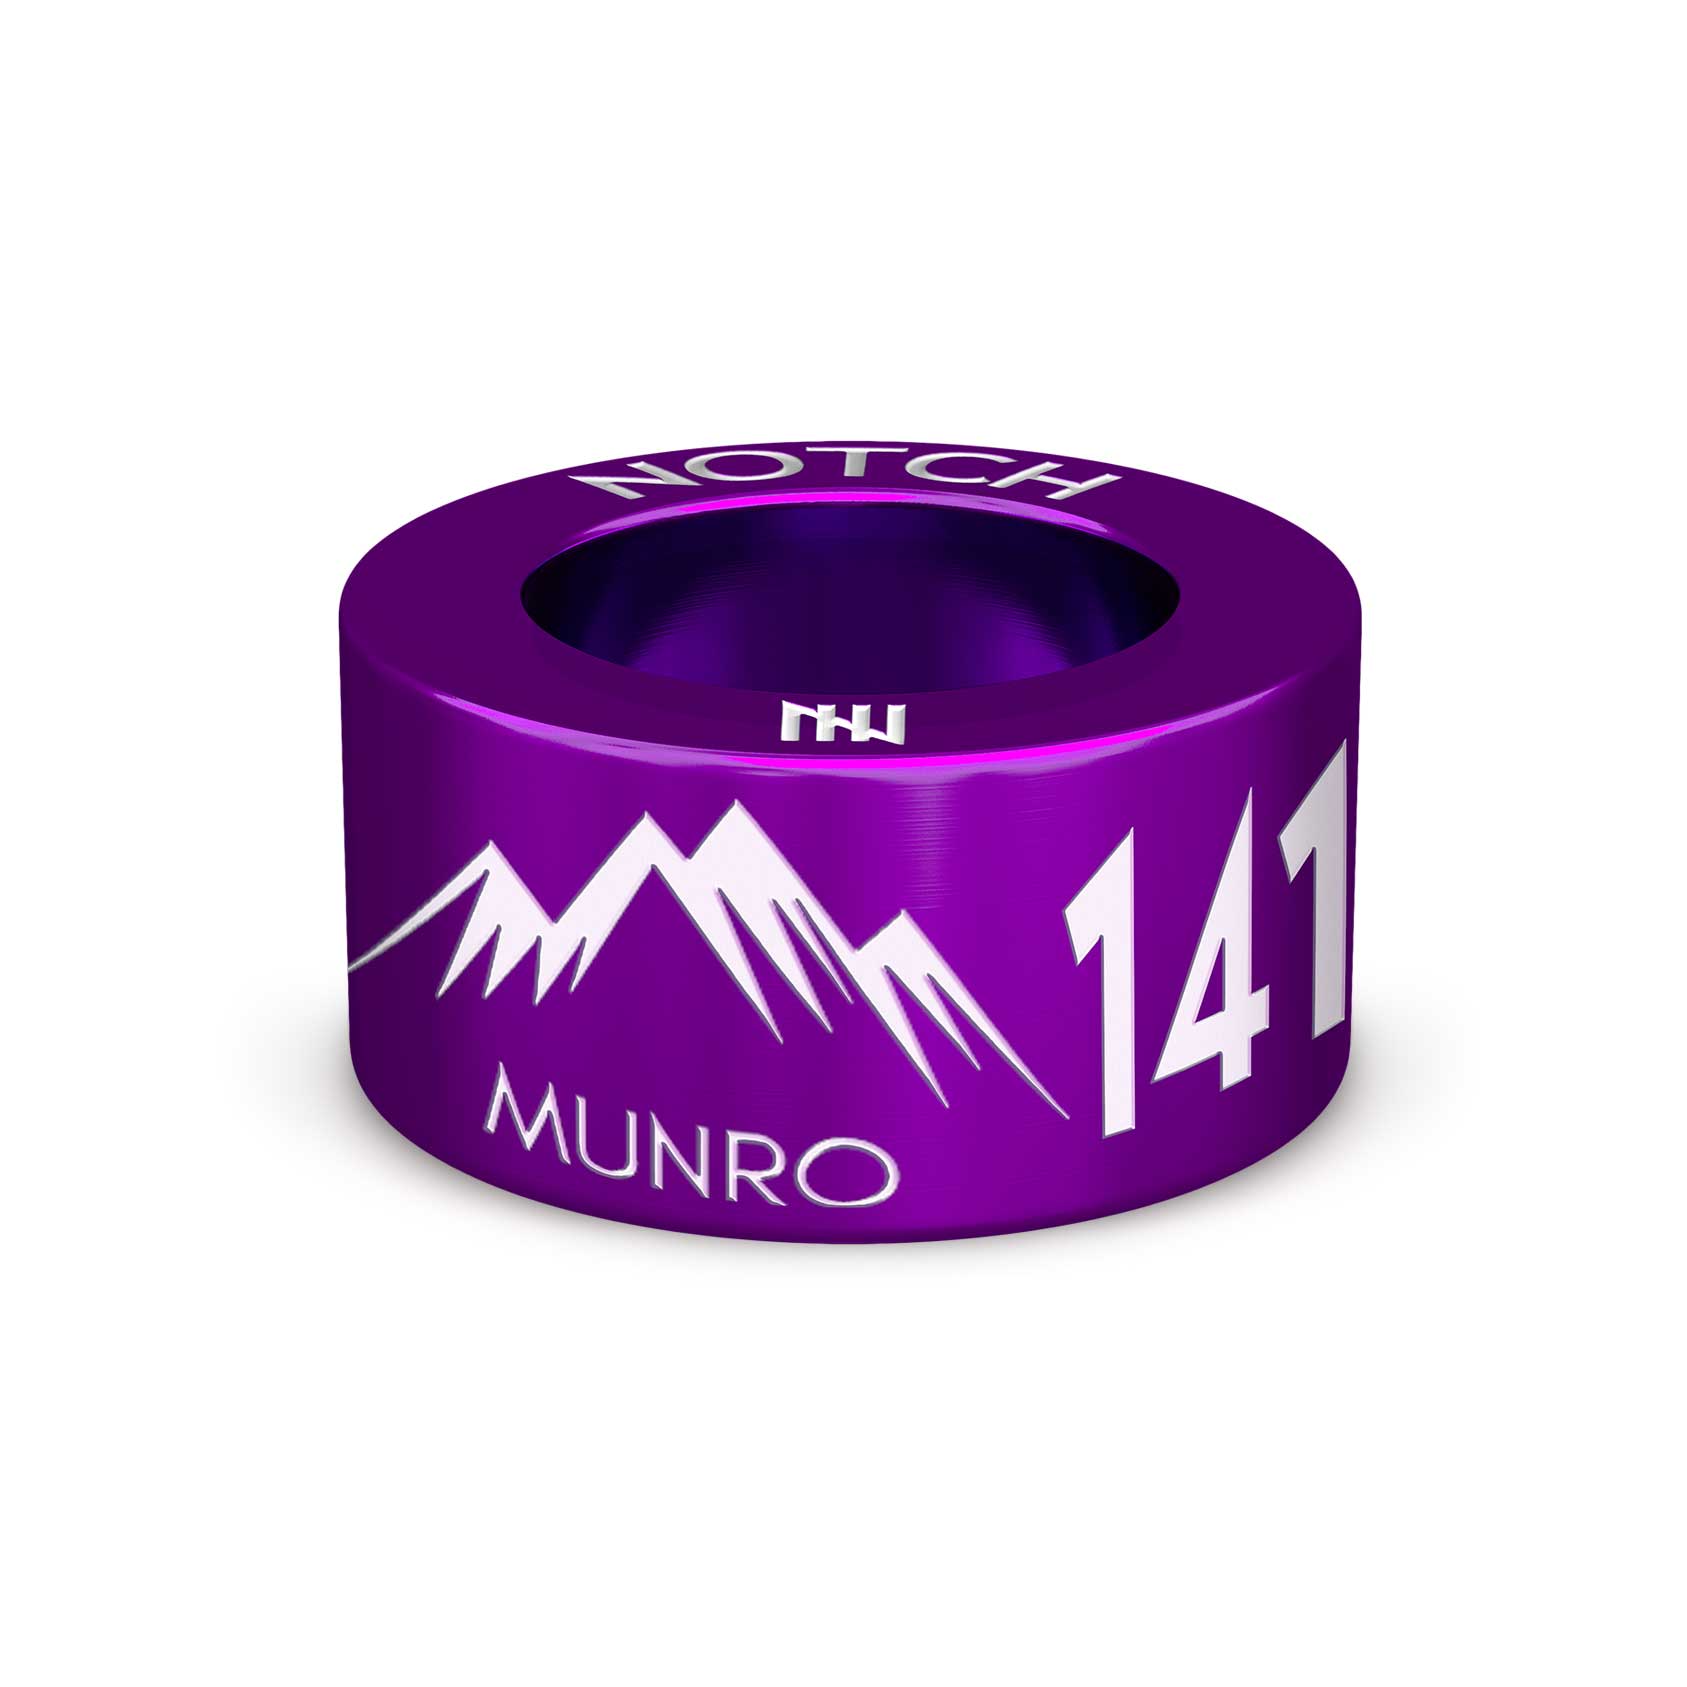 141 Munros Bagged NOTCH Charm